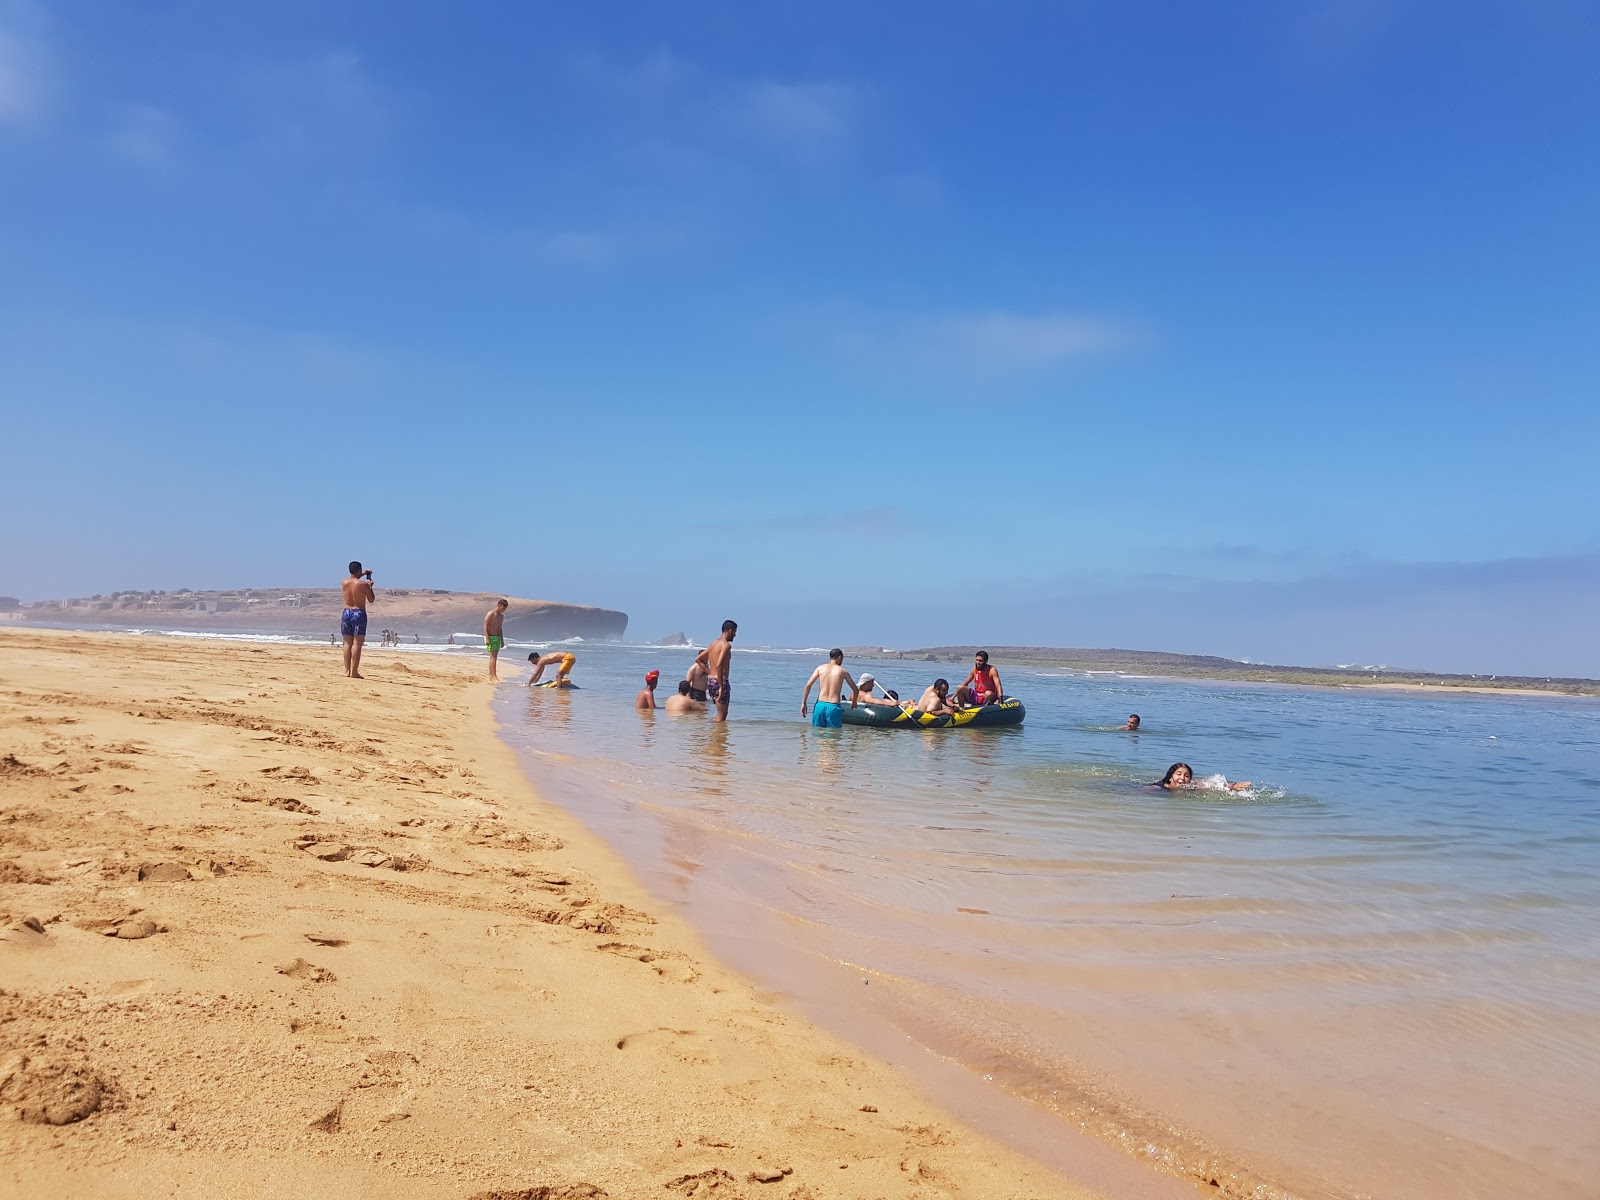 Foto von Sidi Belkheir Beach shaty sydy balkhyr mit viele kleine buchten